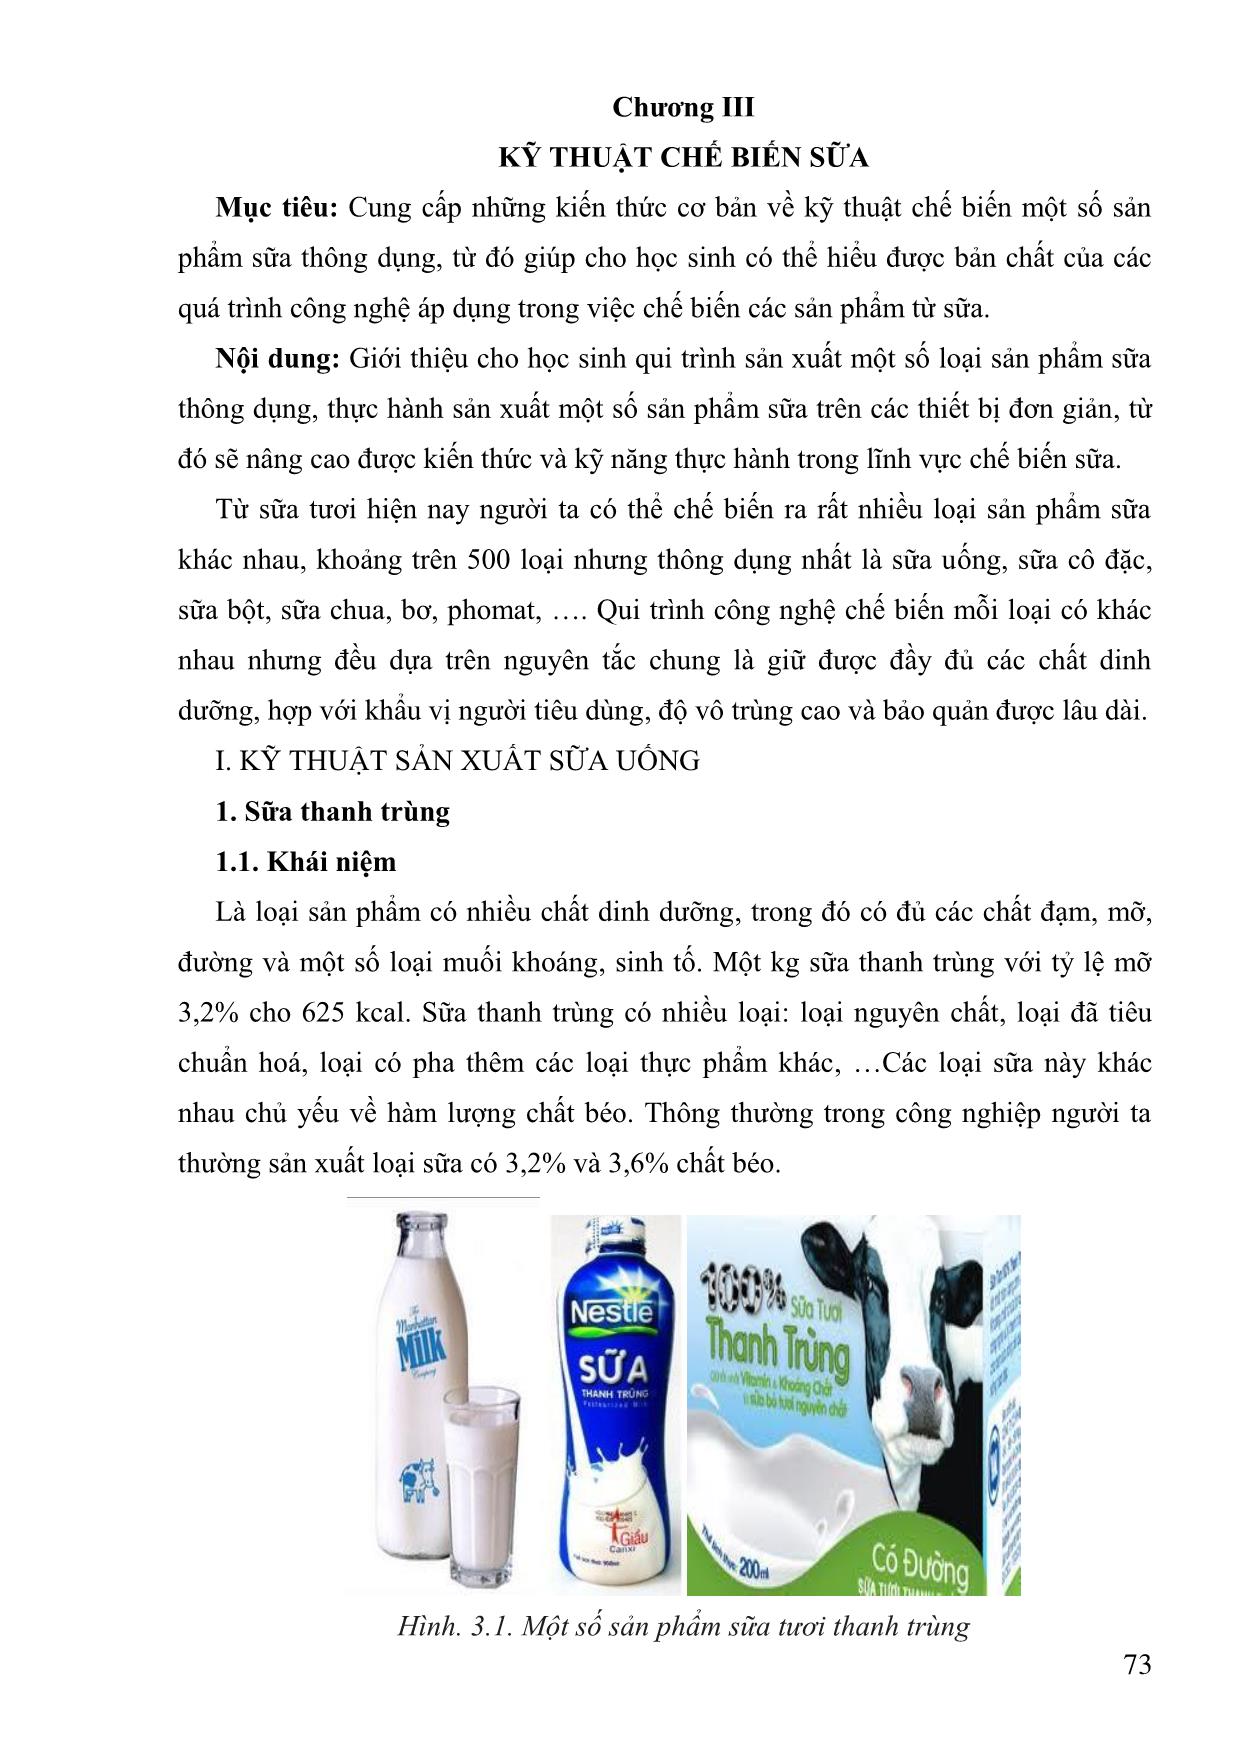 Giáo trình Công nghệ chế biến sữa và các sản phẩm sữa (Phần 2) trang 1